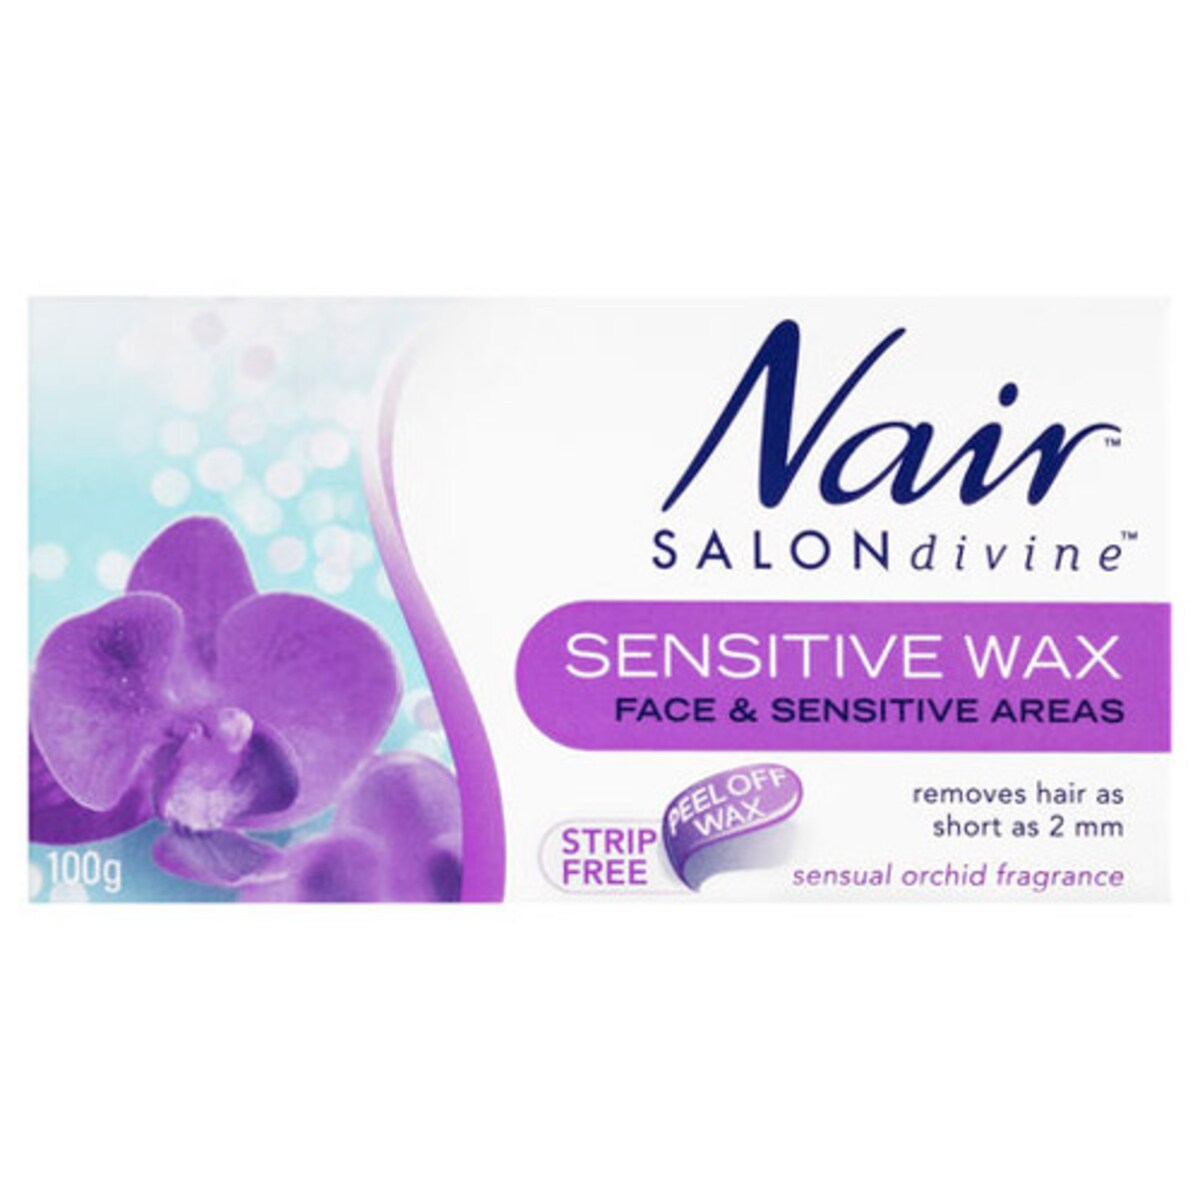 Nair Salon Divine Sensitive Strip Free Wax 100g